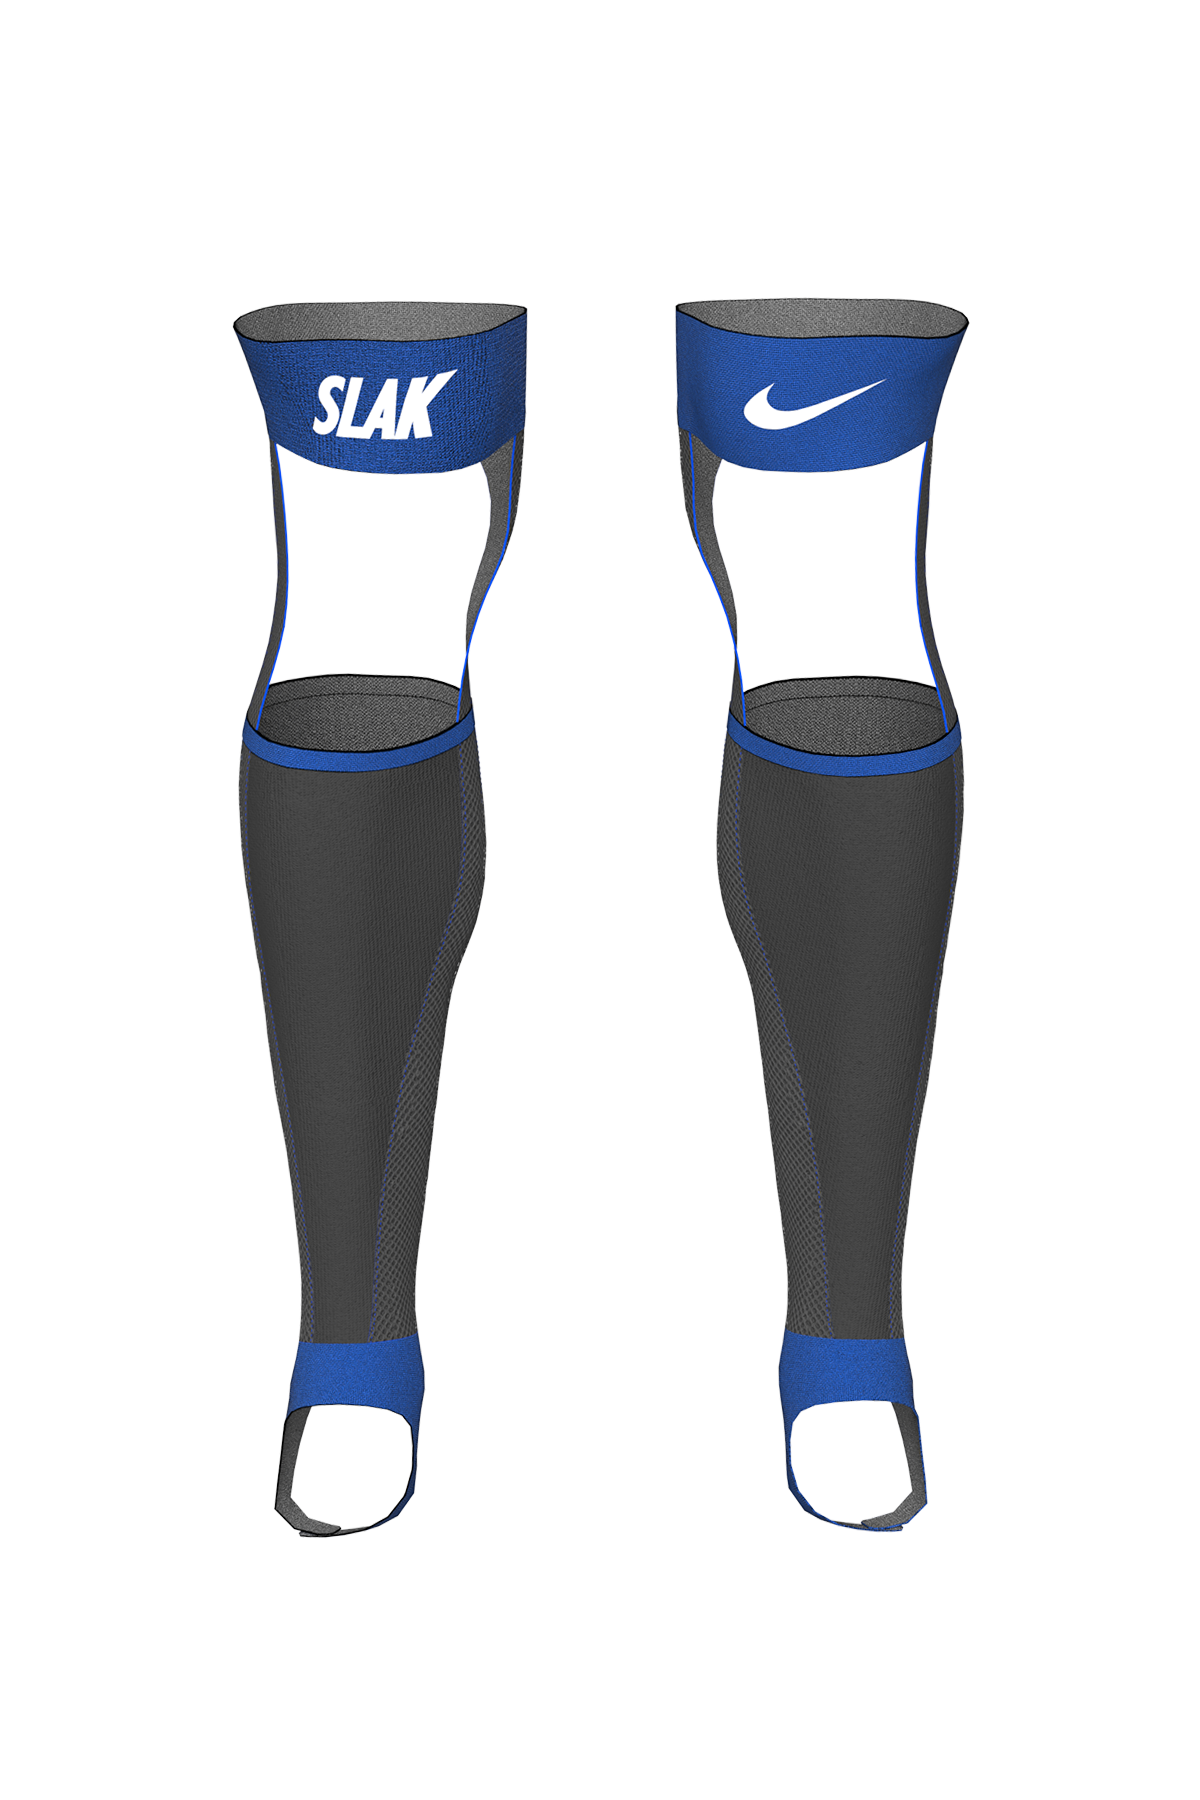 Nike SLAK